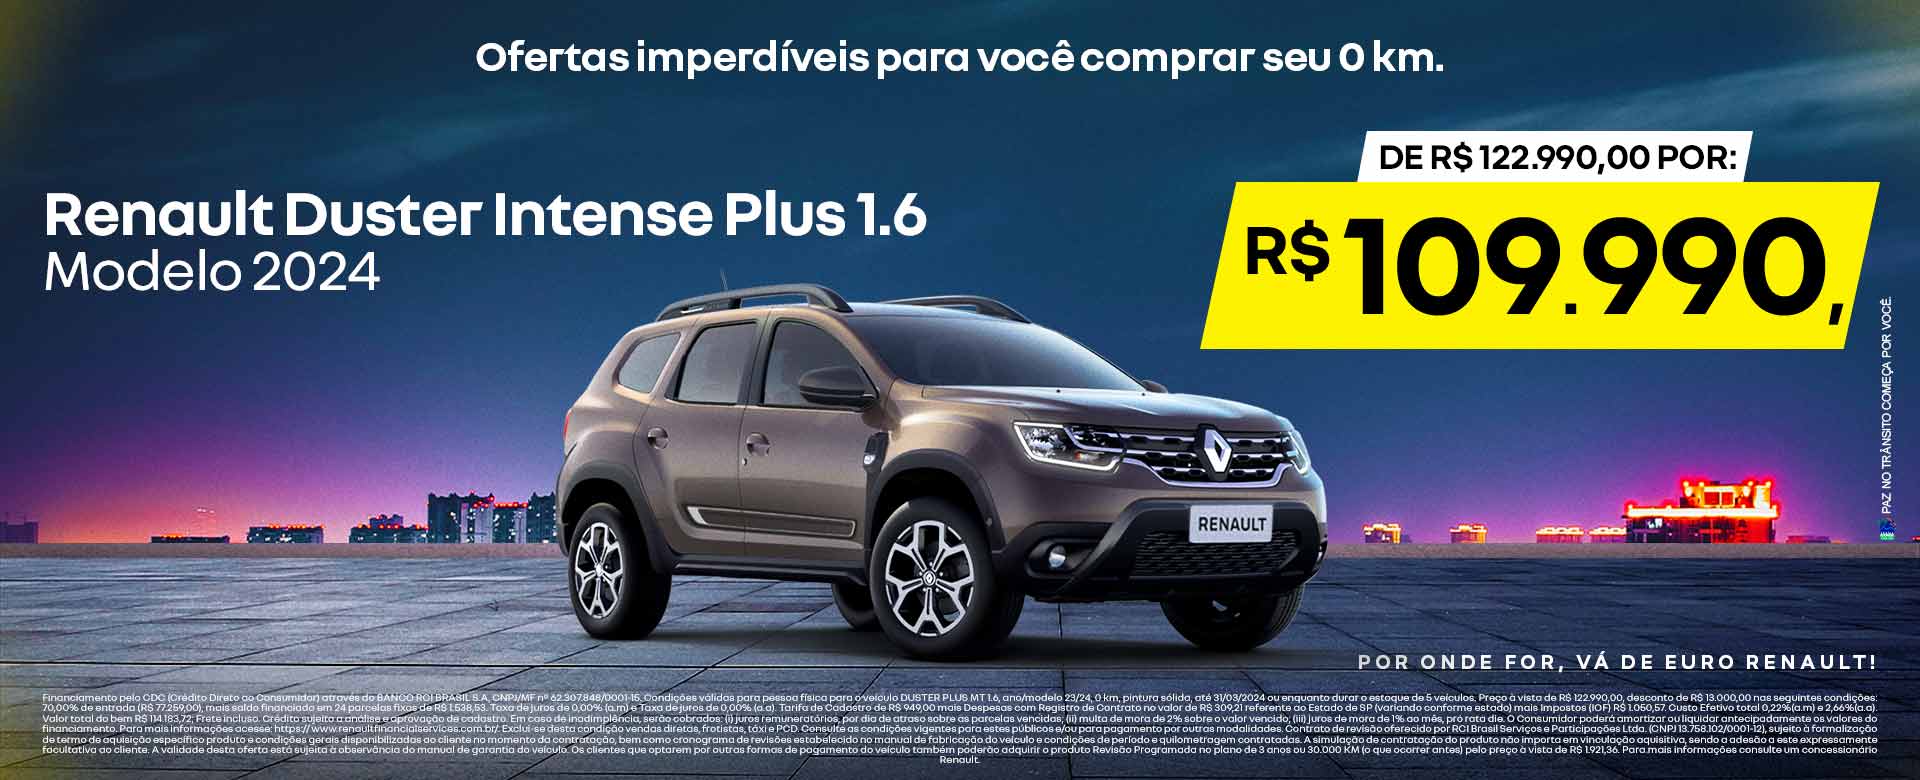 Duster Intense 1.6 modelo 2024 - Por R$109.990,00 - Ribeirão Preto